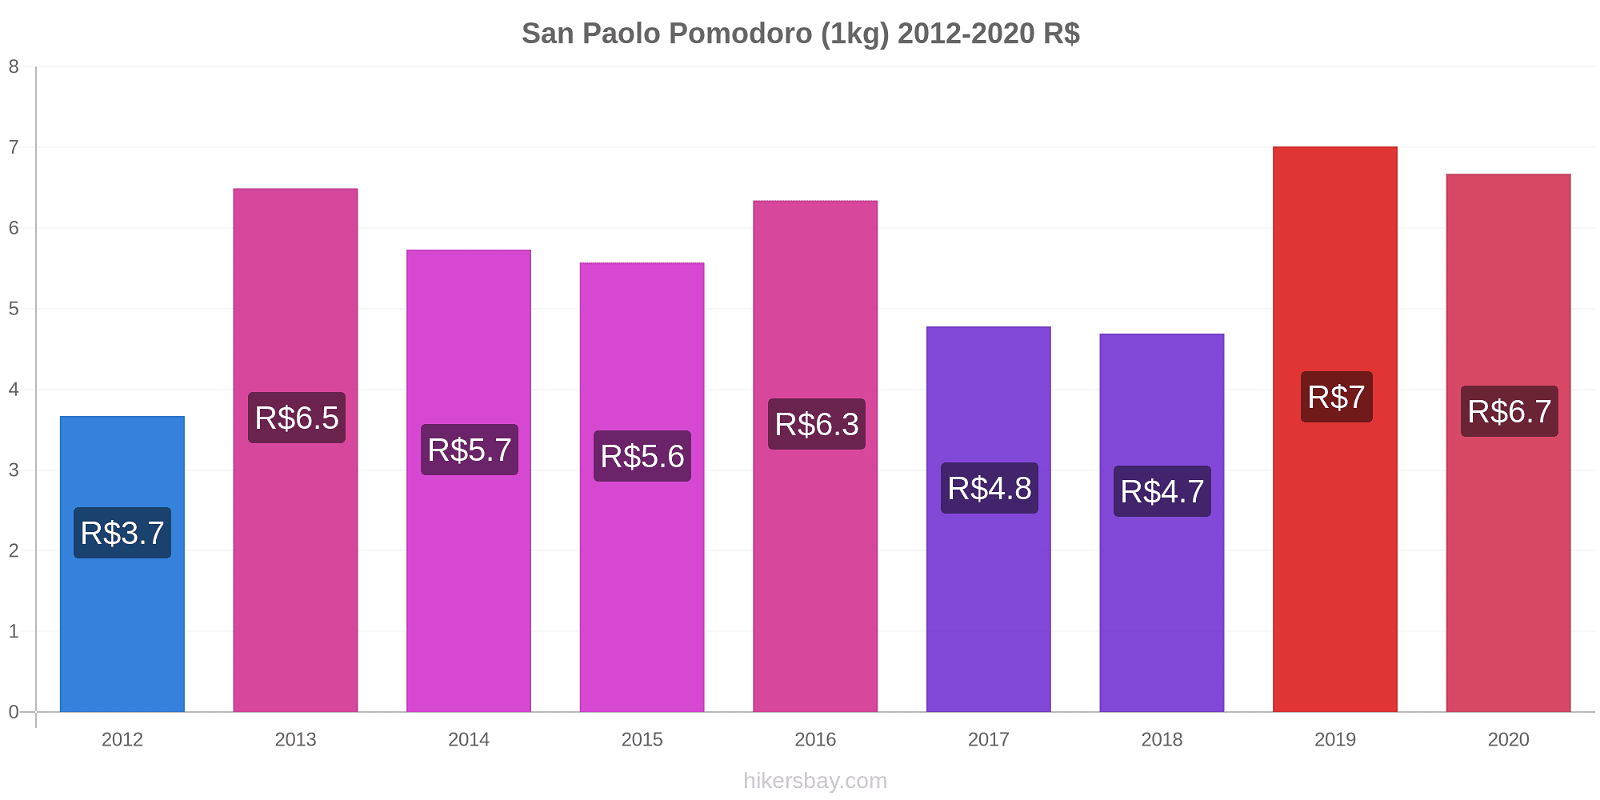 San Paolo variazioni di prezzo Pomodoro (1kg) hikersbay.com